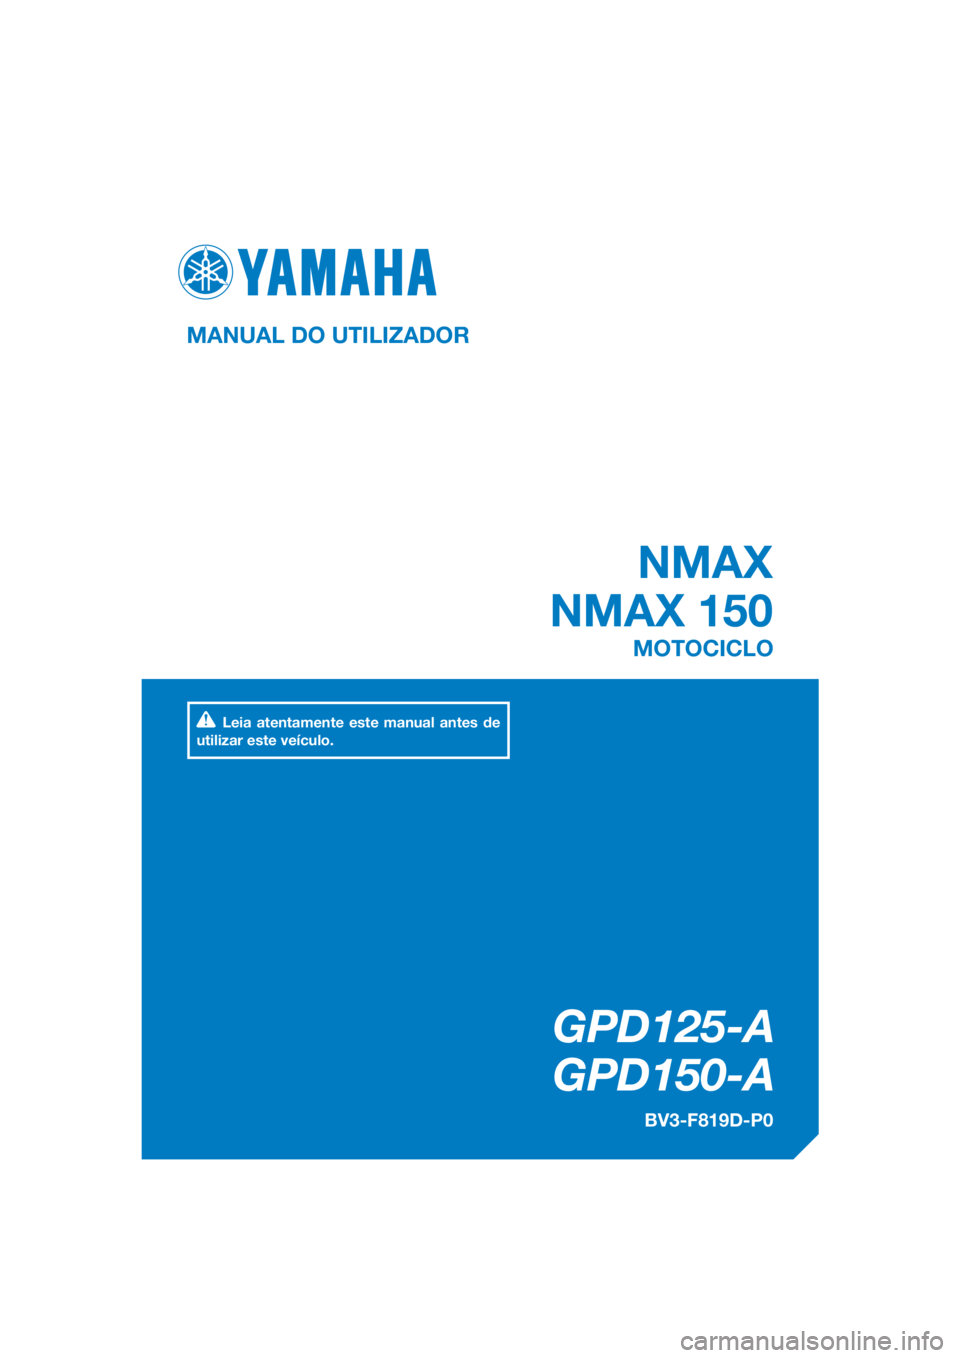 YAMAHA NMAX 125 2016  Manual de utilização (in Portuguese) DIC183
 NMAX
NMAX 150
GPD125-A
   GPD150-A
MANUAL DO UTILIZADOR
BV3-F819D-P0
MOTOCICLO
Leia atentamente este manual antes de 
utilizar este veículo.
[Portuguese  (P)] 